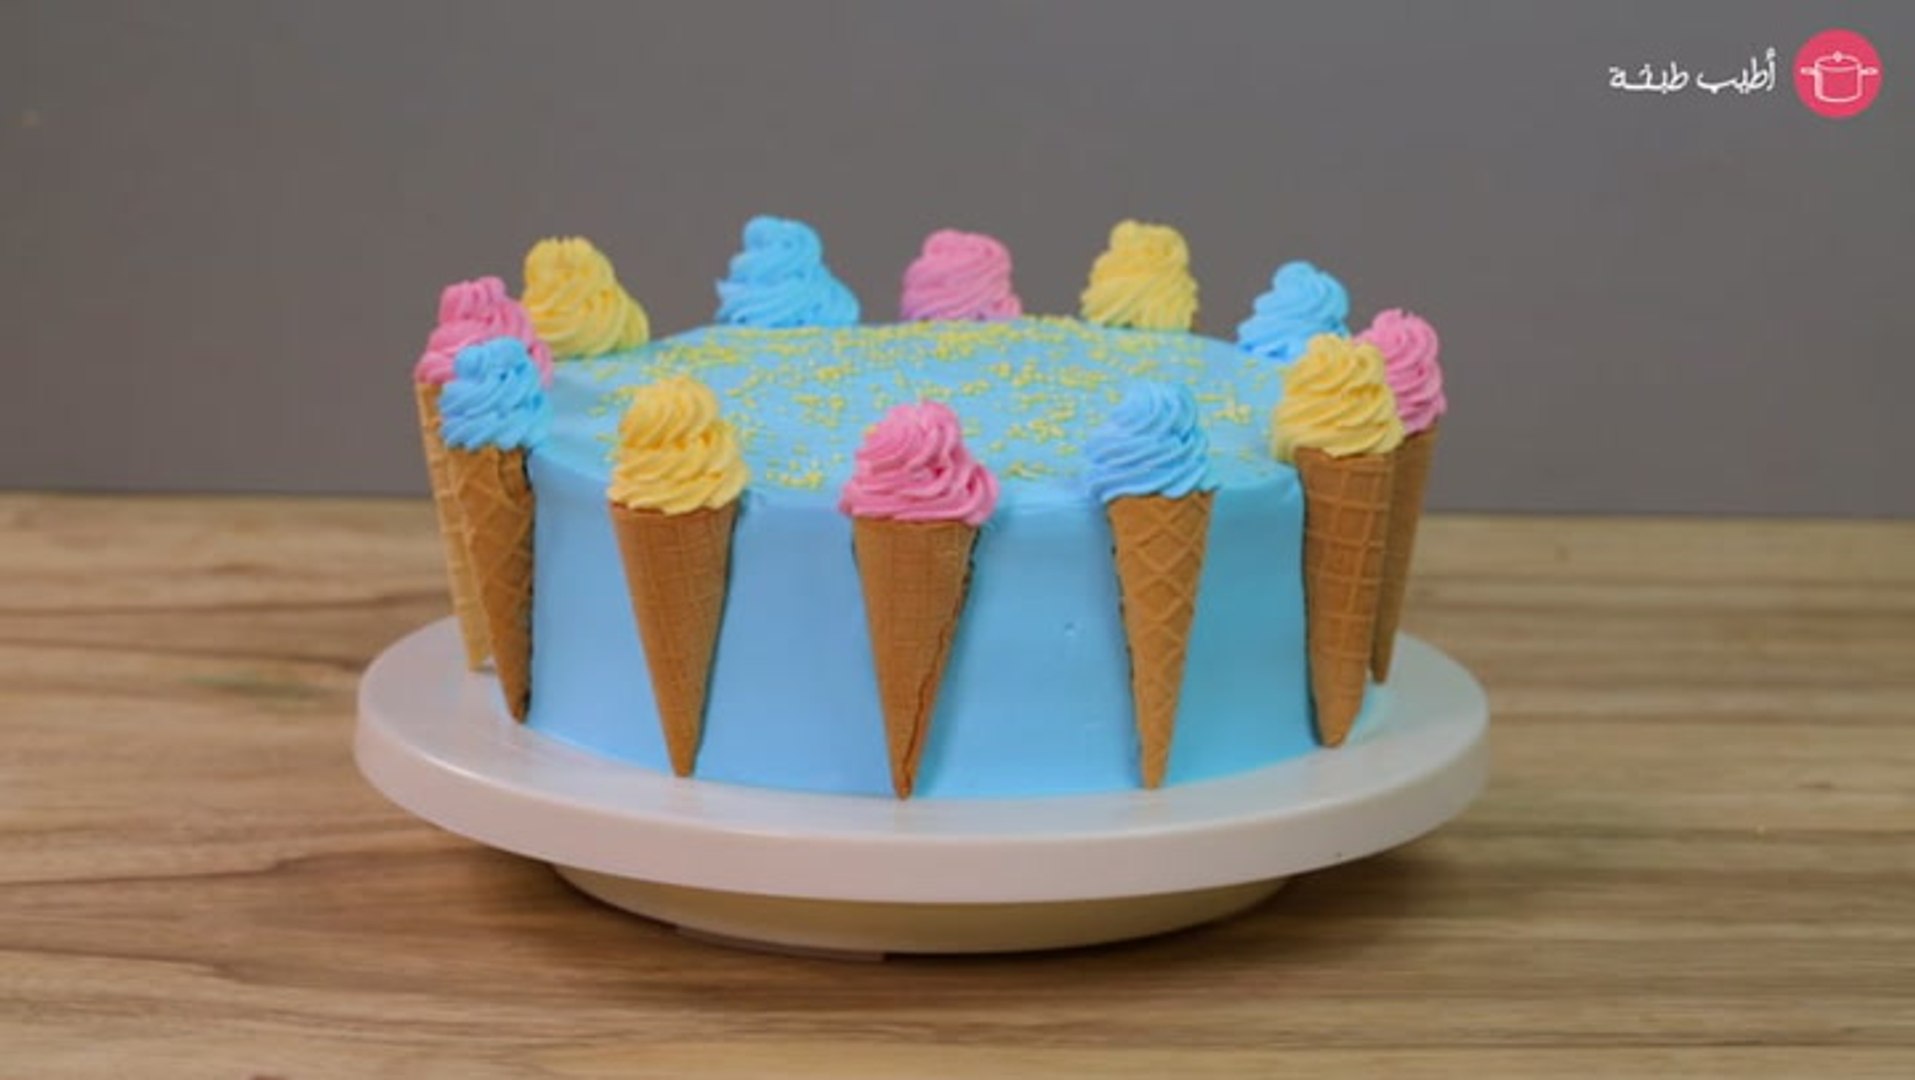 طرق تزيين الكيك بالكريمة الملونة - فيديو Dailymotion